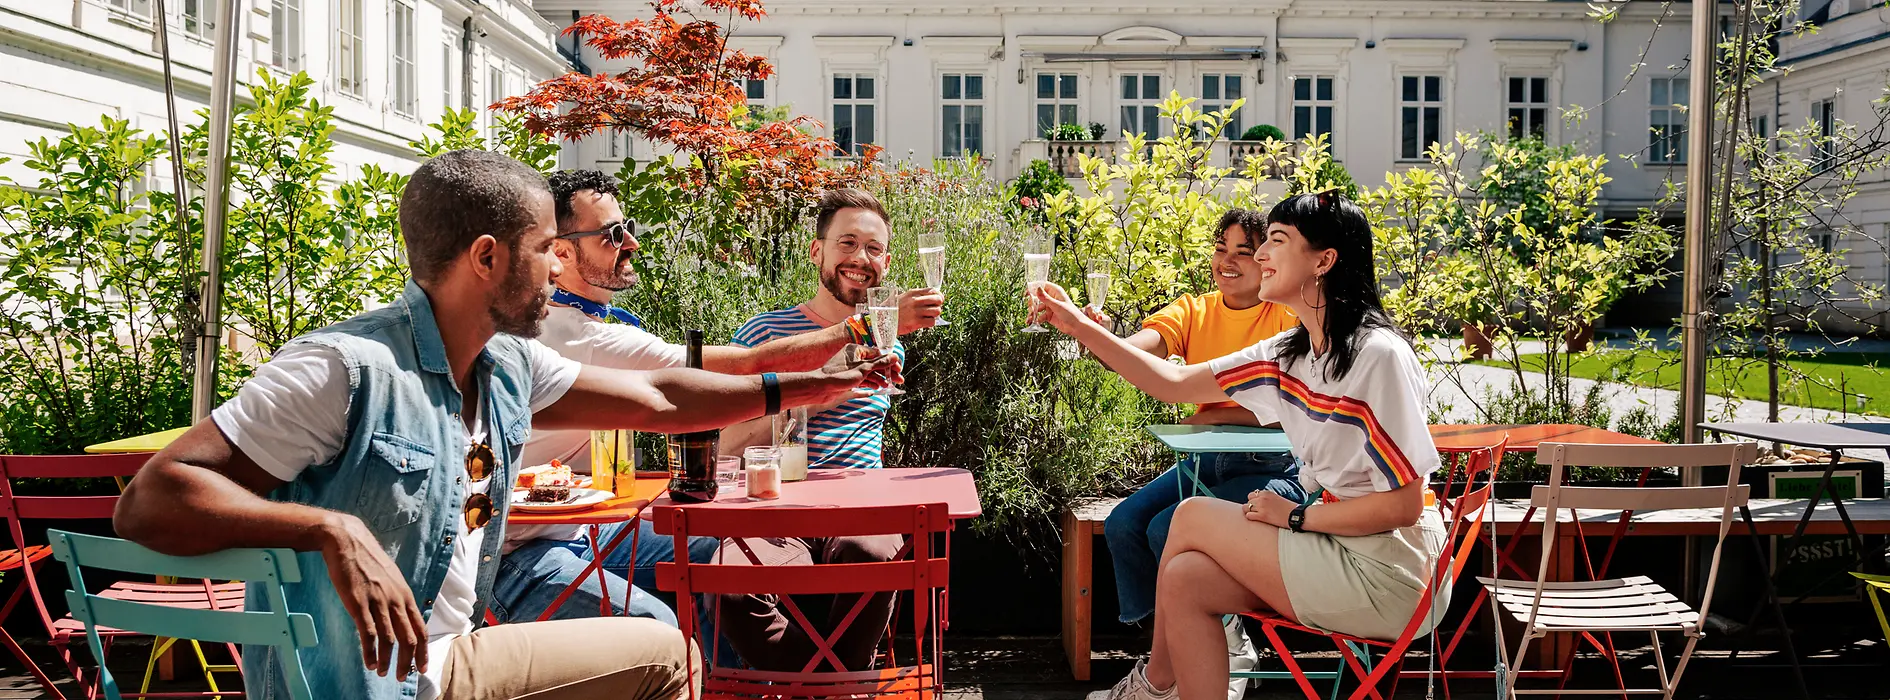 Grupo de jóvenes bebiendo en una terraza